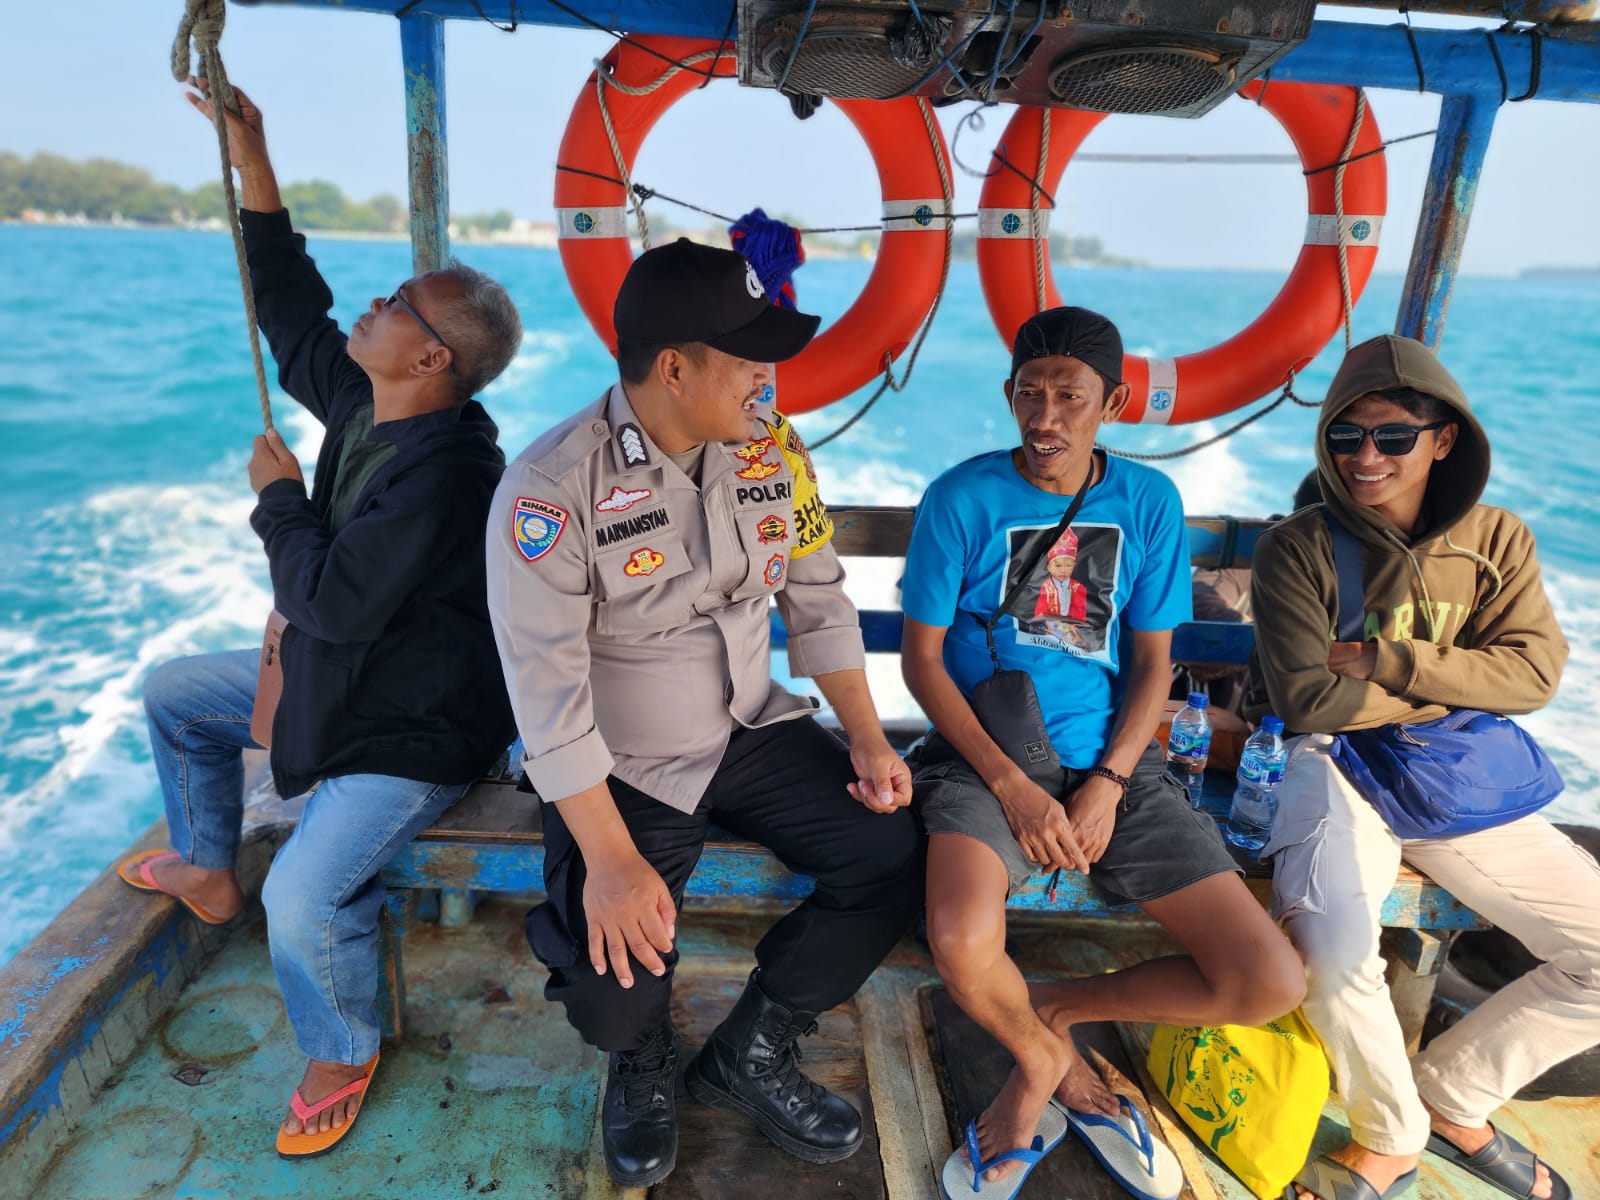 Bhabinkamtibmas Pulau Pramuka Gelar Sambang Tokoh Masyarakat di Atas Kapal, Ajak Bersama Menjaga Ketentraman Pasca Pemilu 2024